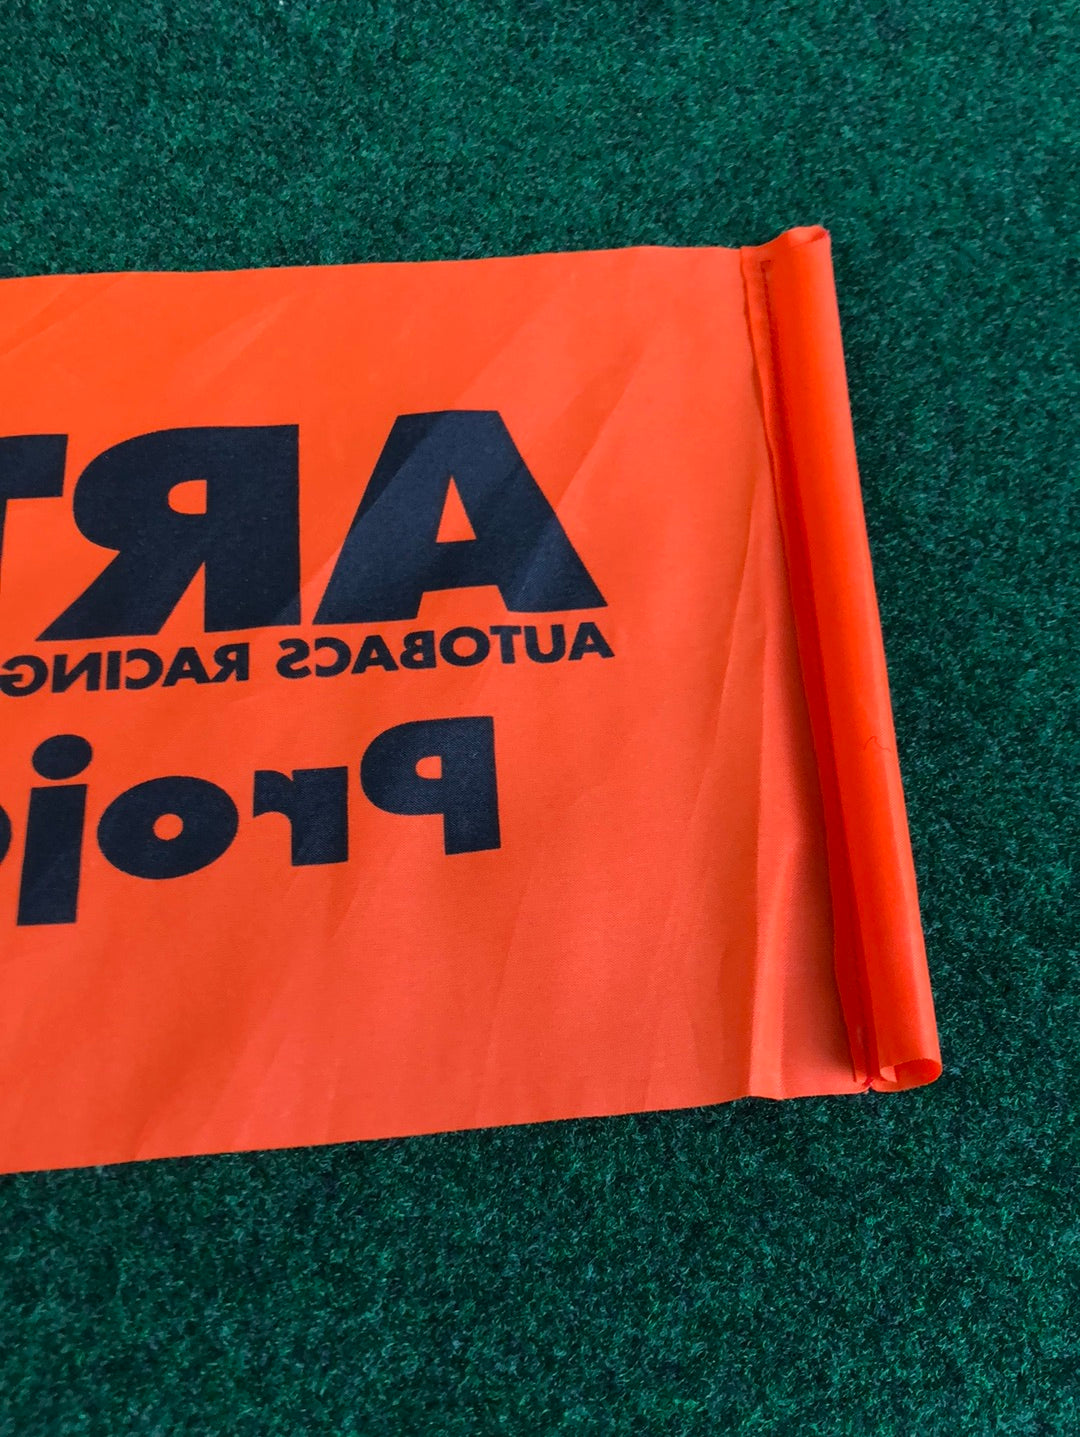 ARTA Autobacs - Super GT Small Event Cheering Flag